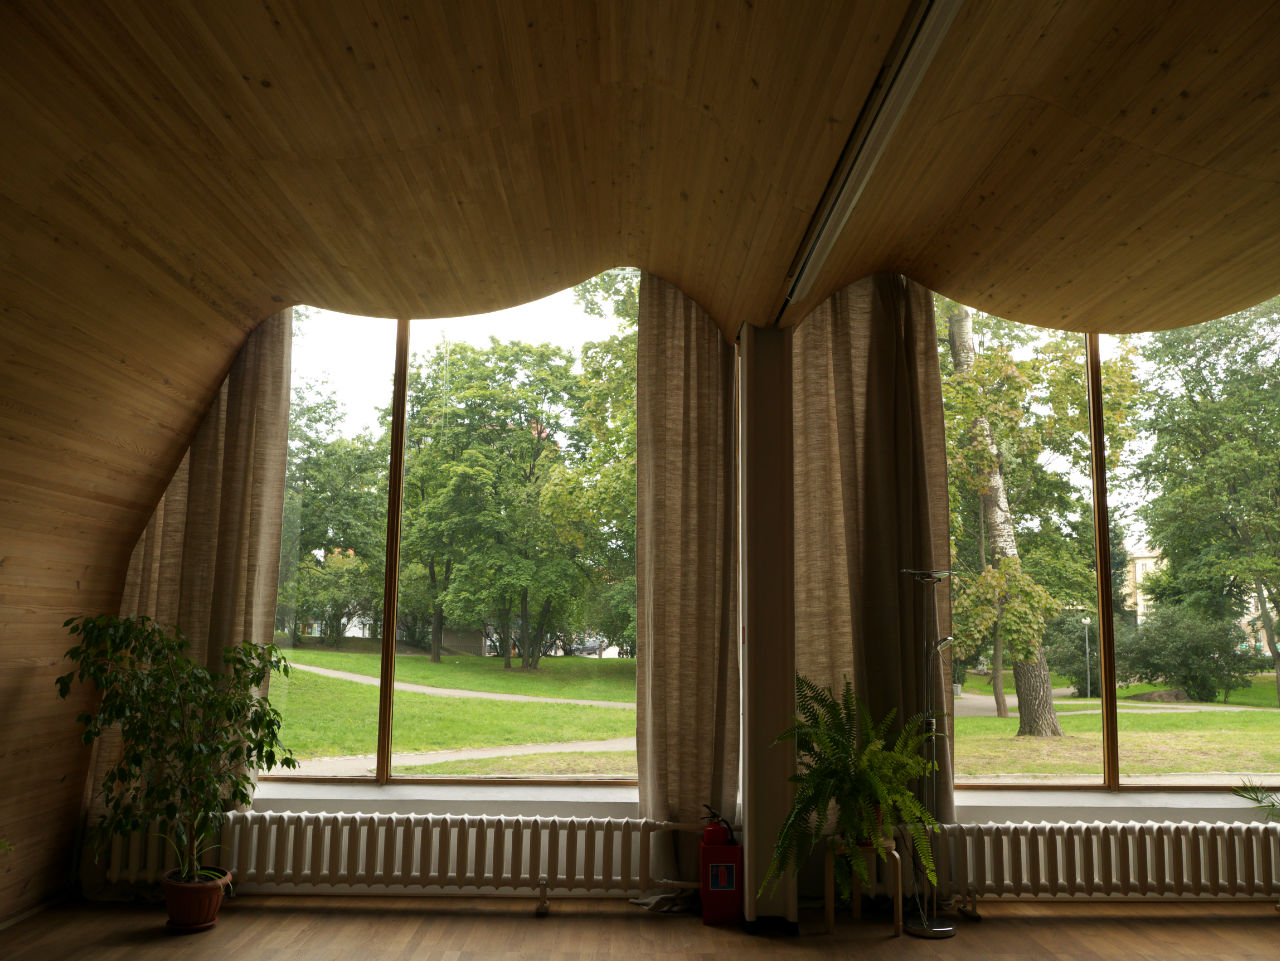 Сенсацию в архитектурном мире вызвал волнообразный деревянный акустический потолок лекционного зала Библиотеки Алвара Аалто, в настоящее время полностью восстановленный по оригинальным чертежам. Выборг, Россия